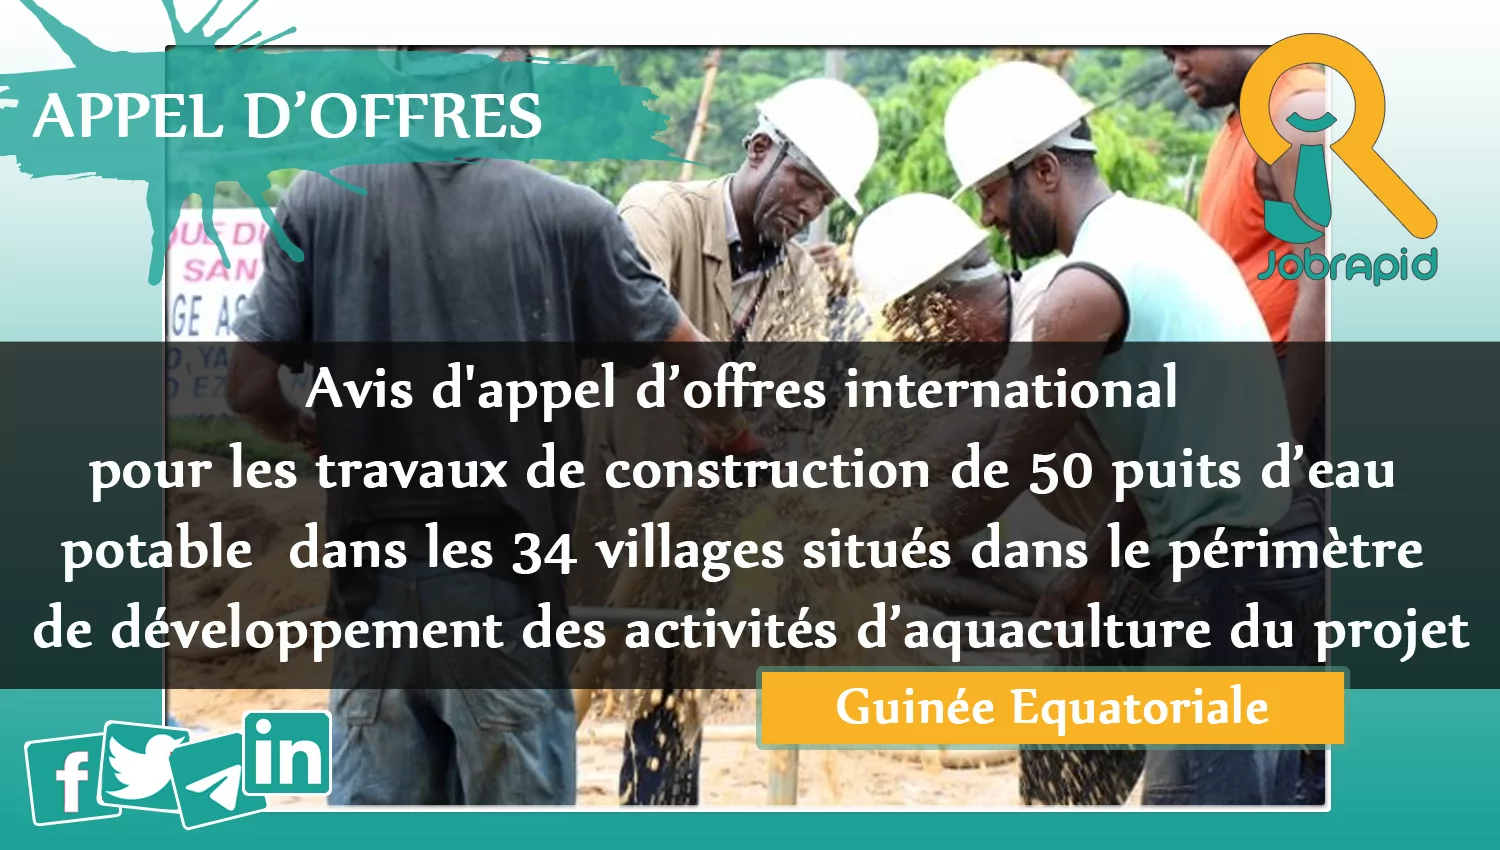 Avis d’appel d’offres international pour les travaux de construction de 50 puits d’eau potable dans les 34 villages situés dans le périmètre de développement des activités d’aquaculture du projet, Guinée Equatoriale 